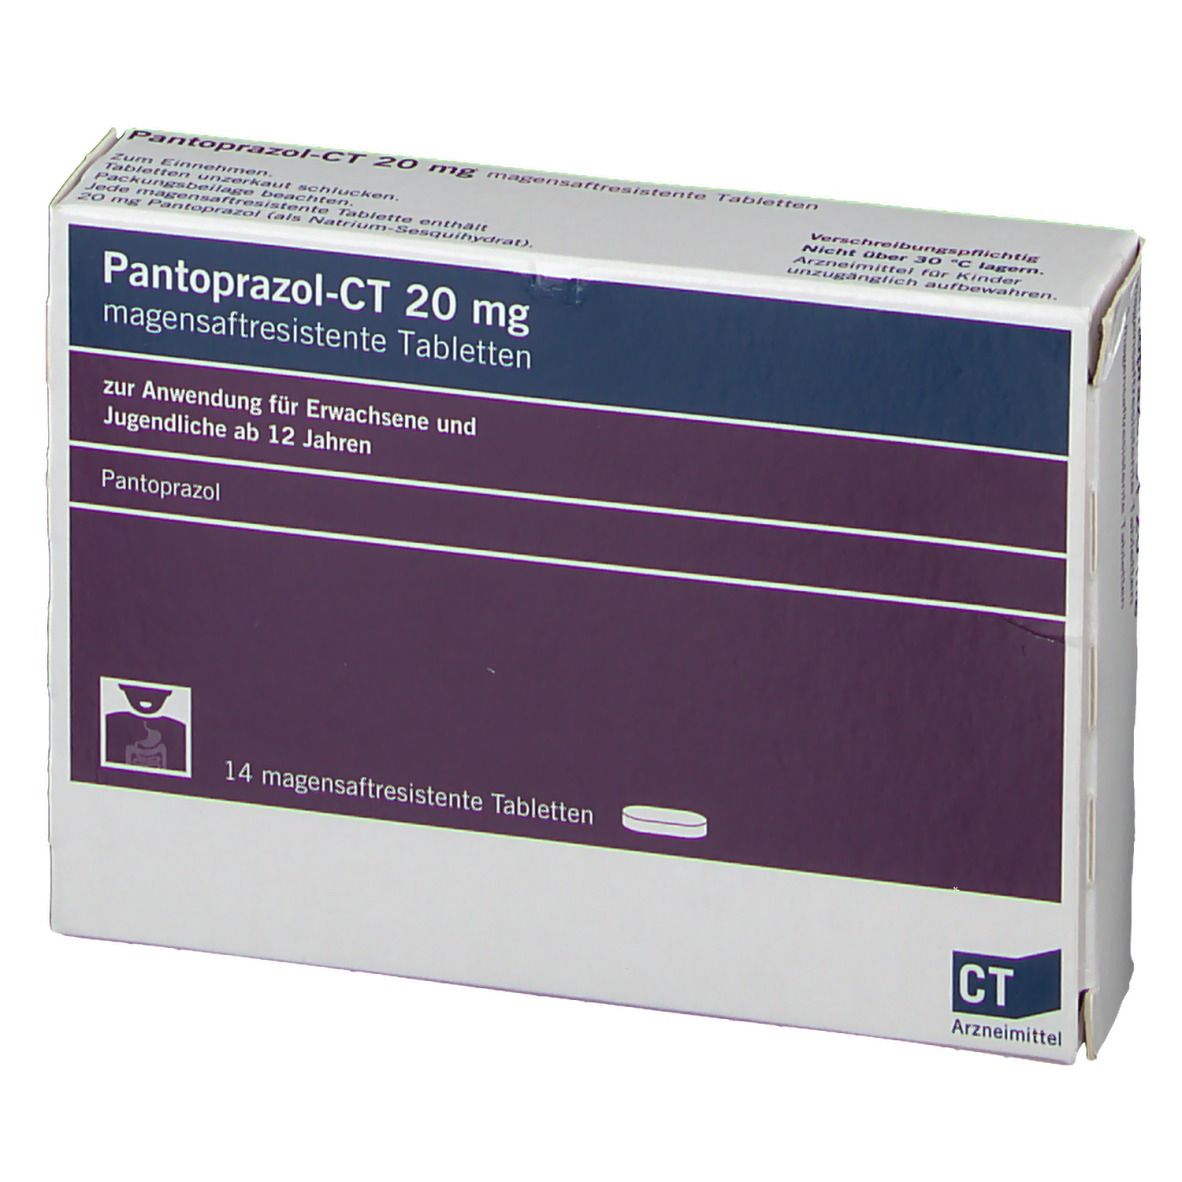 Pantoprazol-CT 20 mg